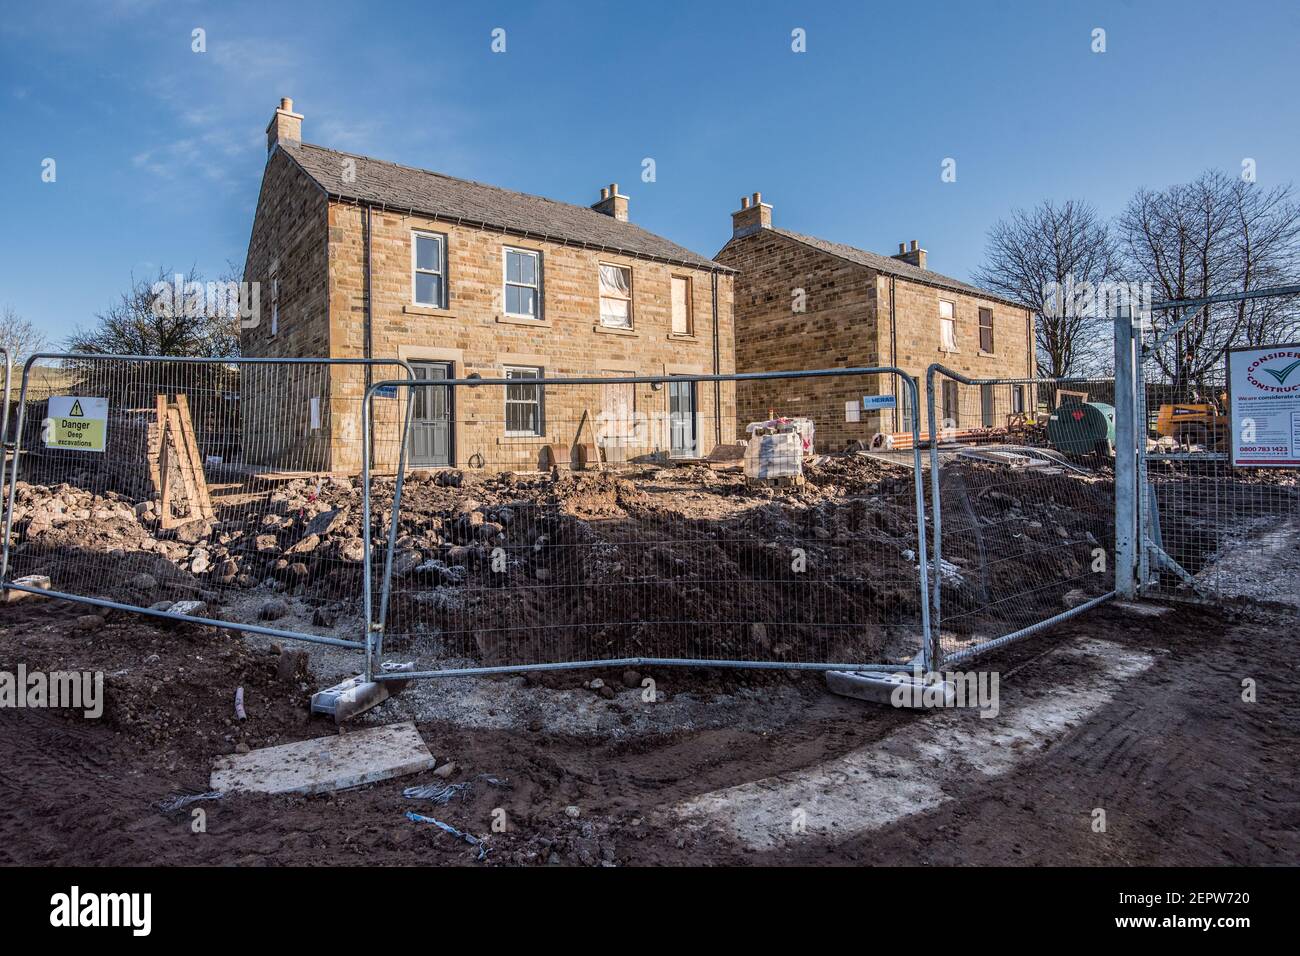 Housing scheme in Long Preston village Stock Photo